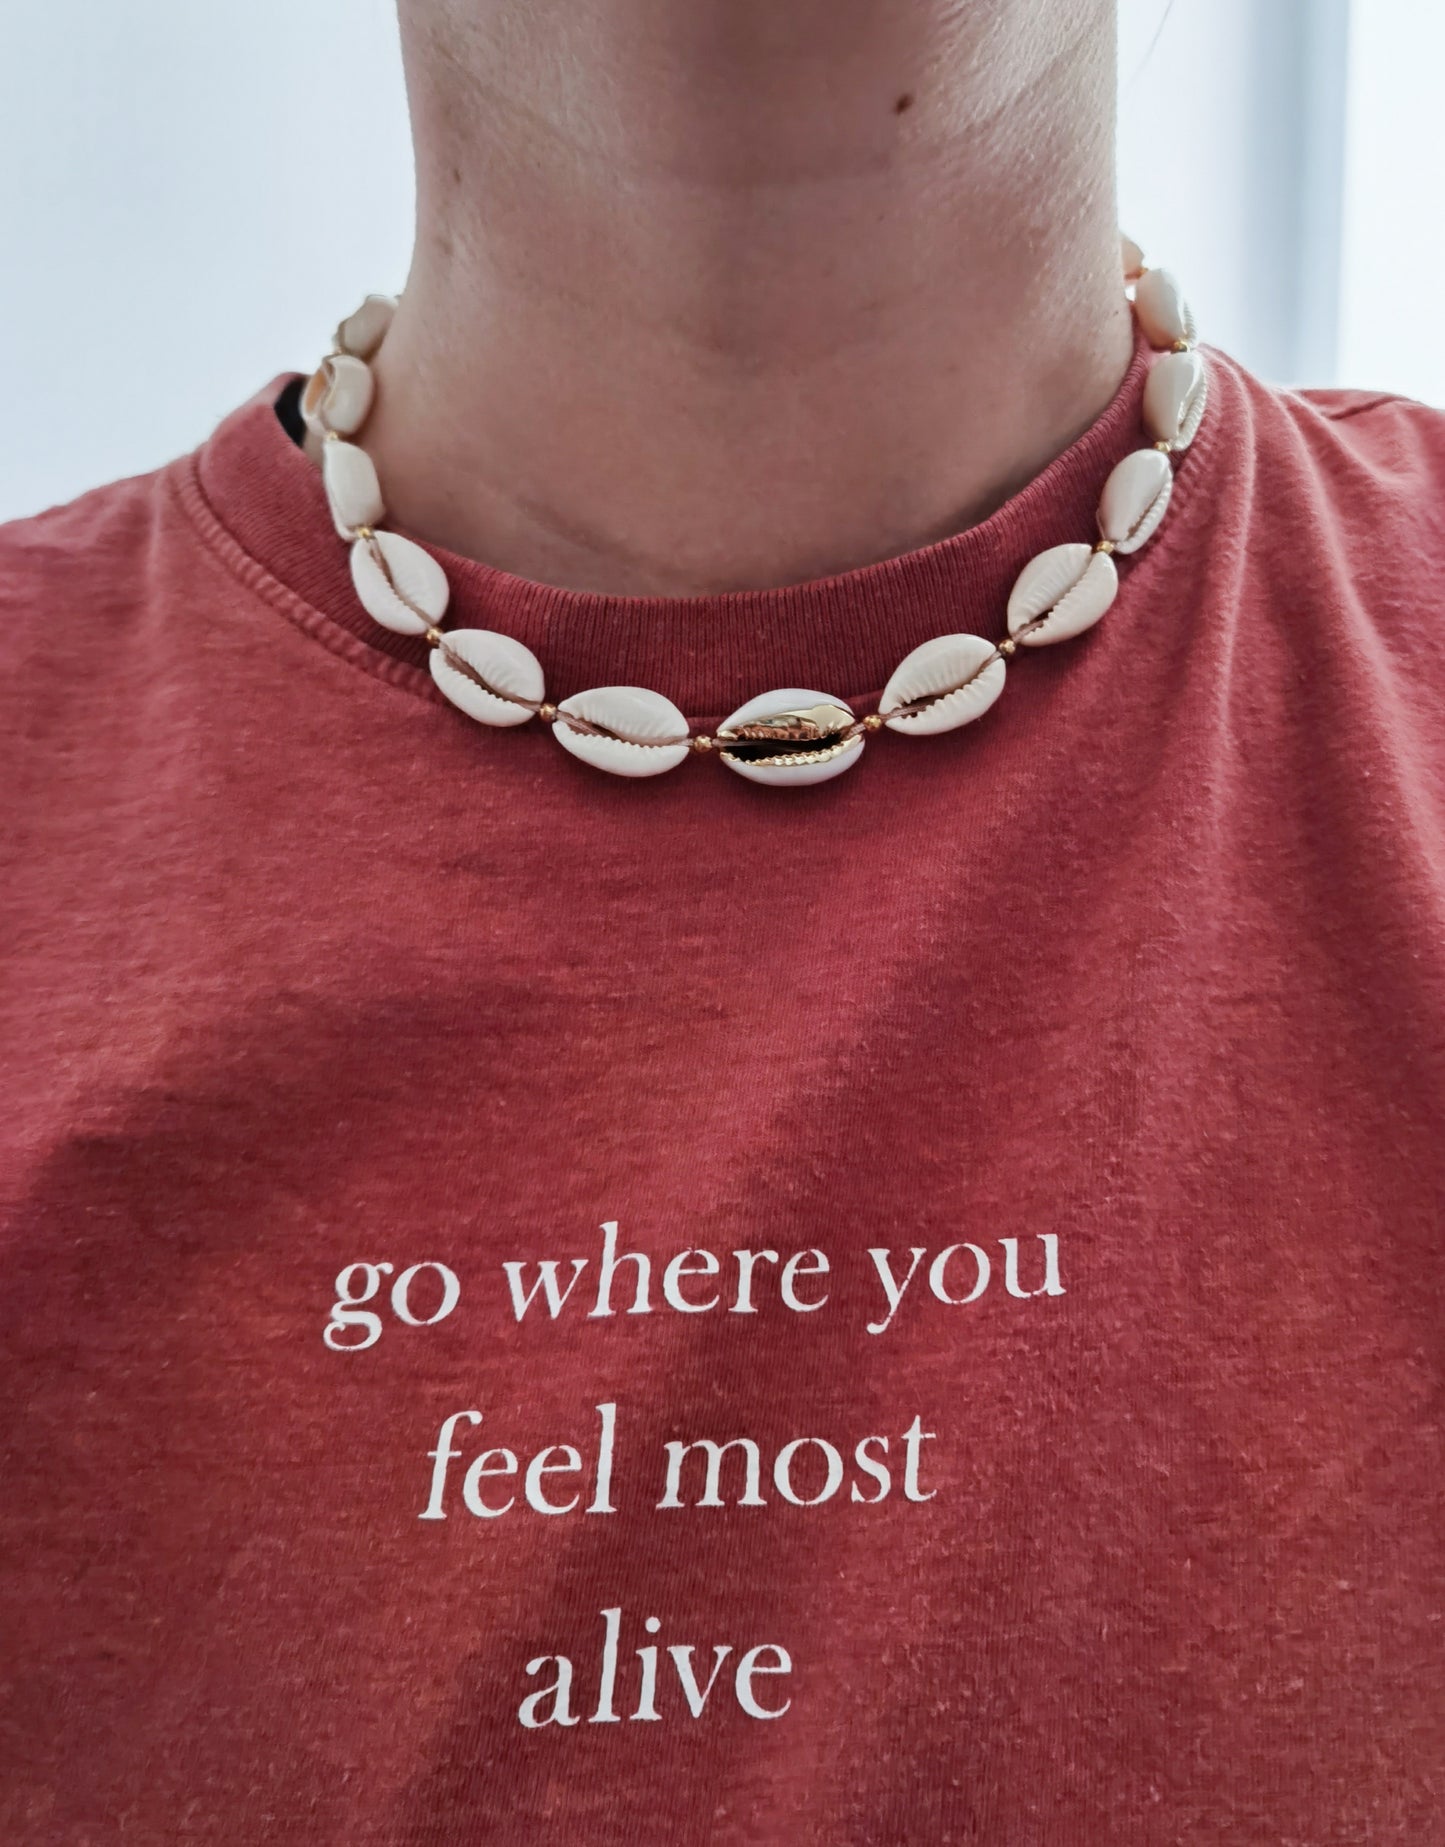 Nahaufnahme rotes T-Shirt mit Aufschrift "go where you feel most alive) und Muschelkette mit goldenen Akzenten